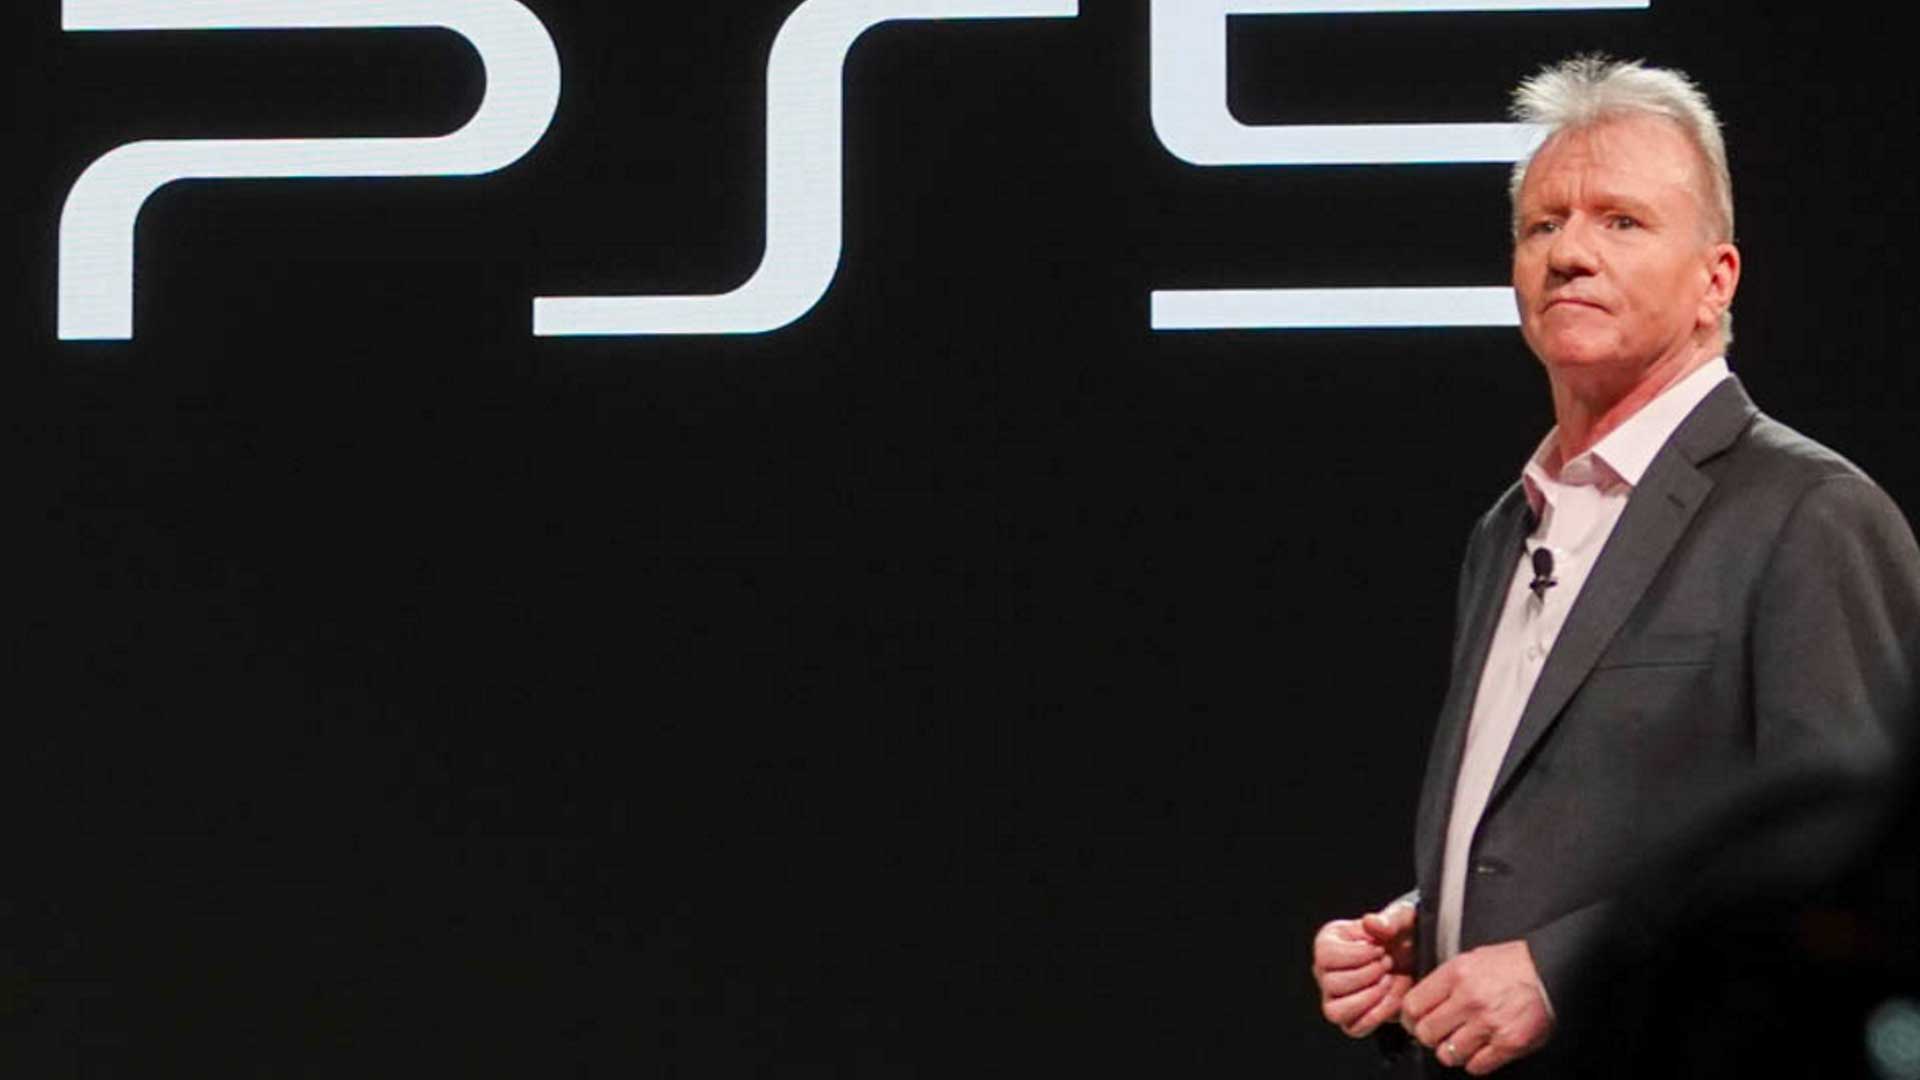 جیم رایان، رئیس و مدیرعامل بخش سرگرمی های تعاملی شرکت سونی در کنار لوگو کنسول PS5